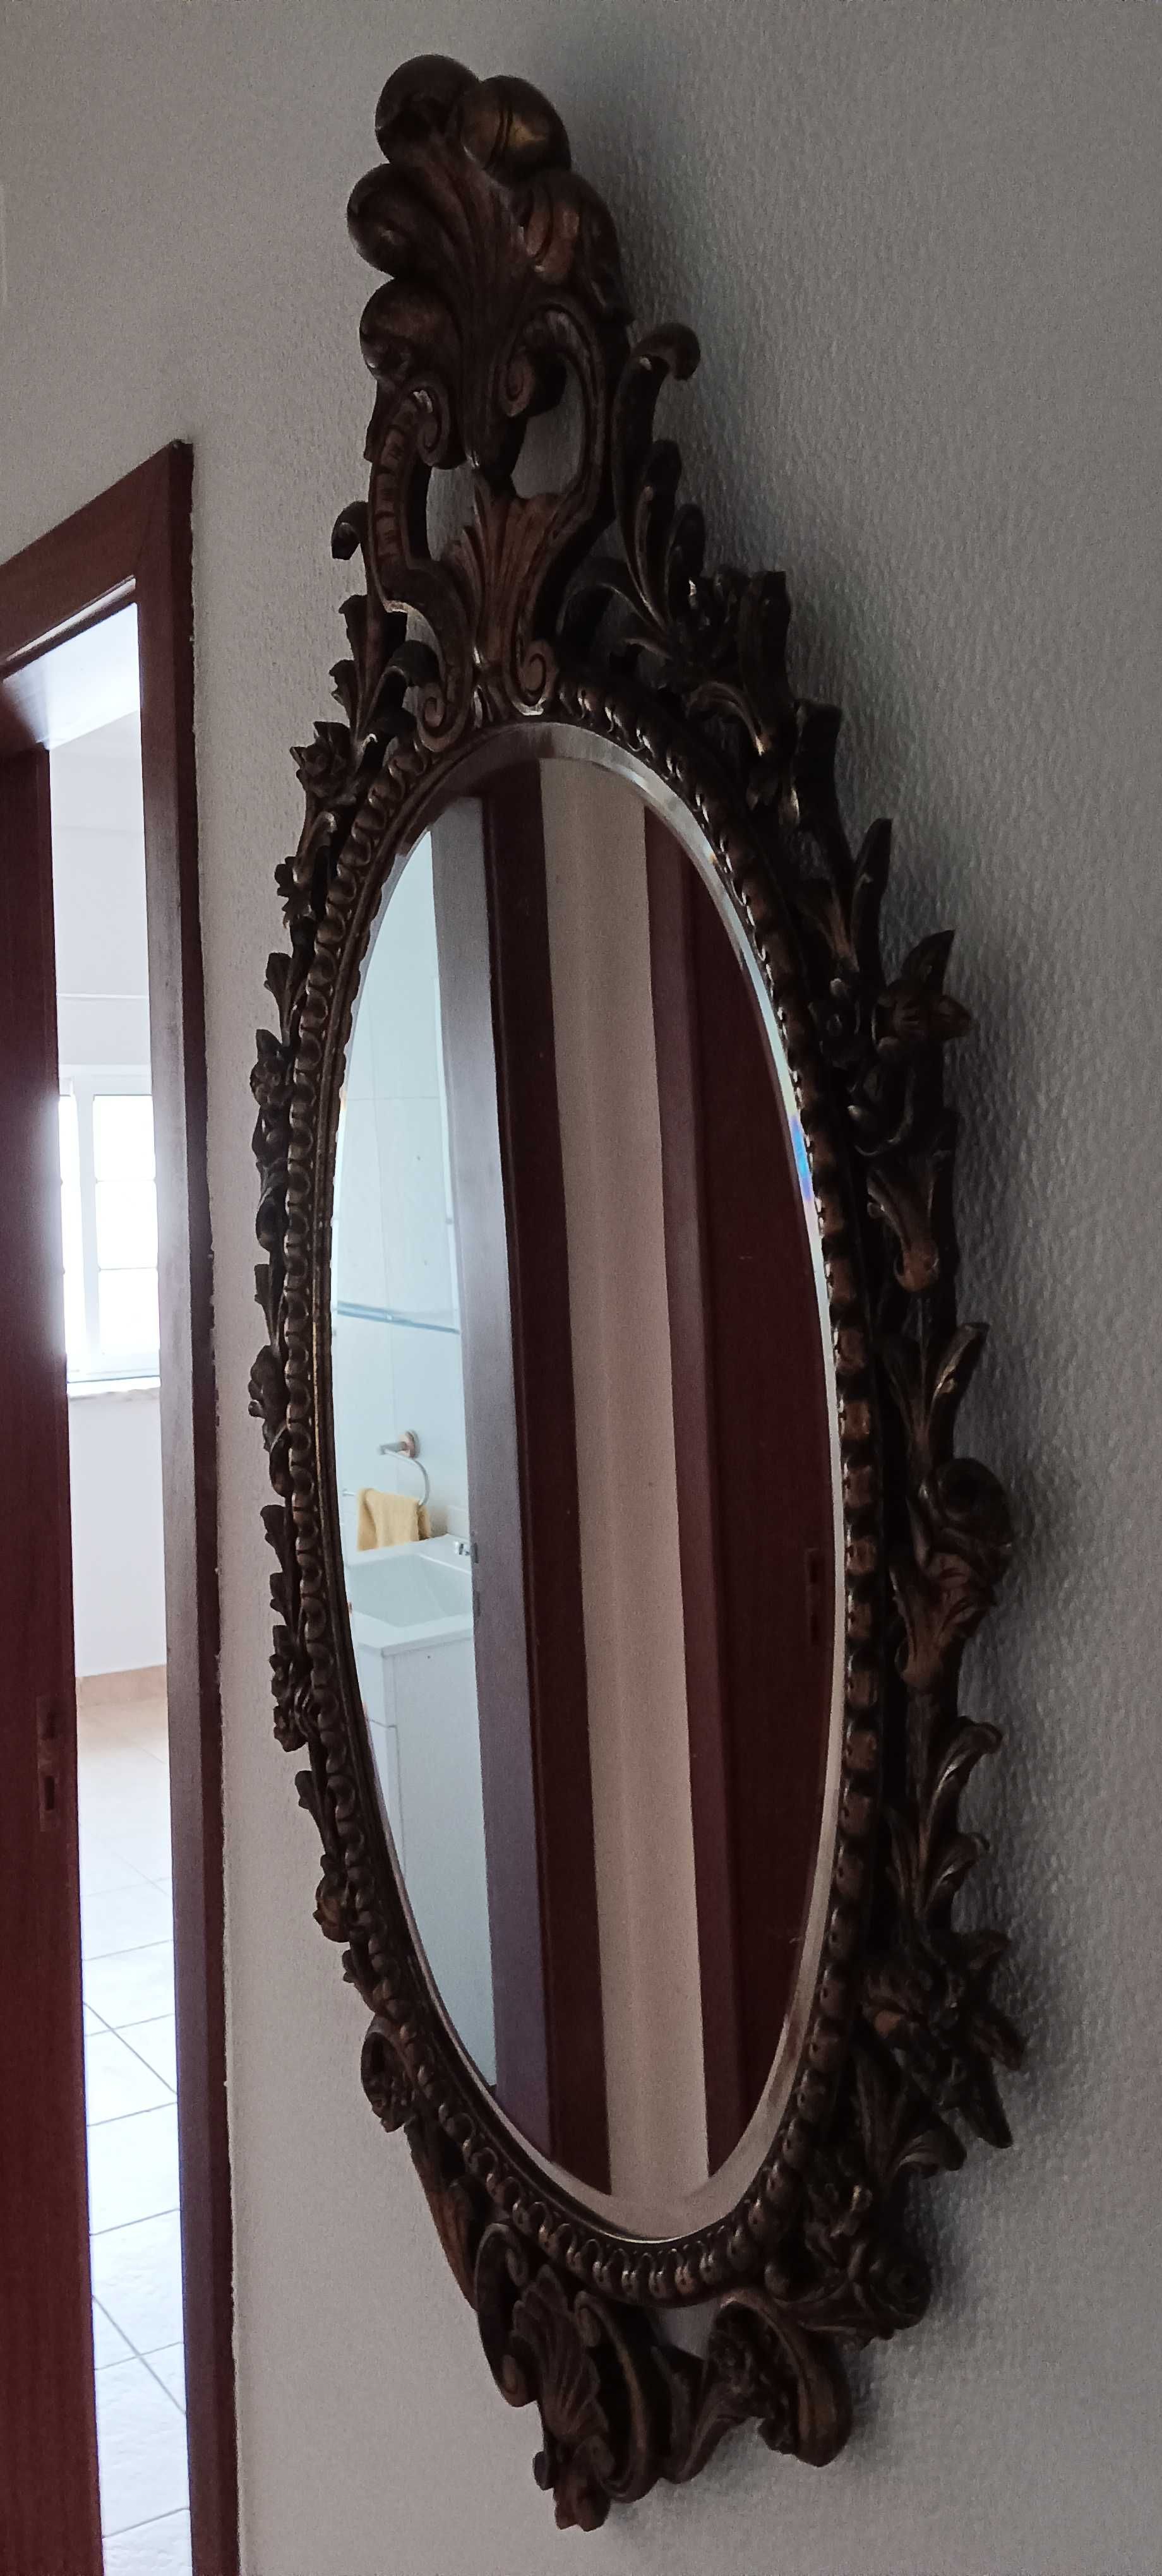 Espelho de parede